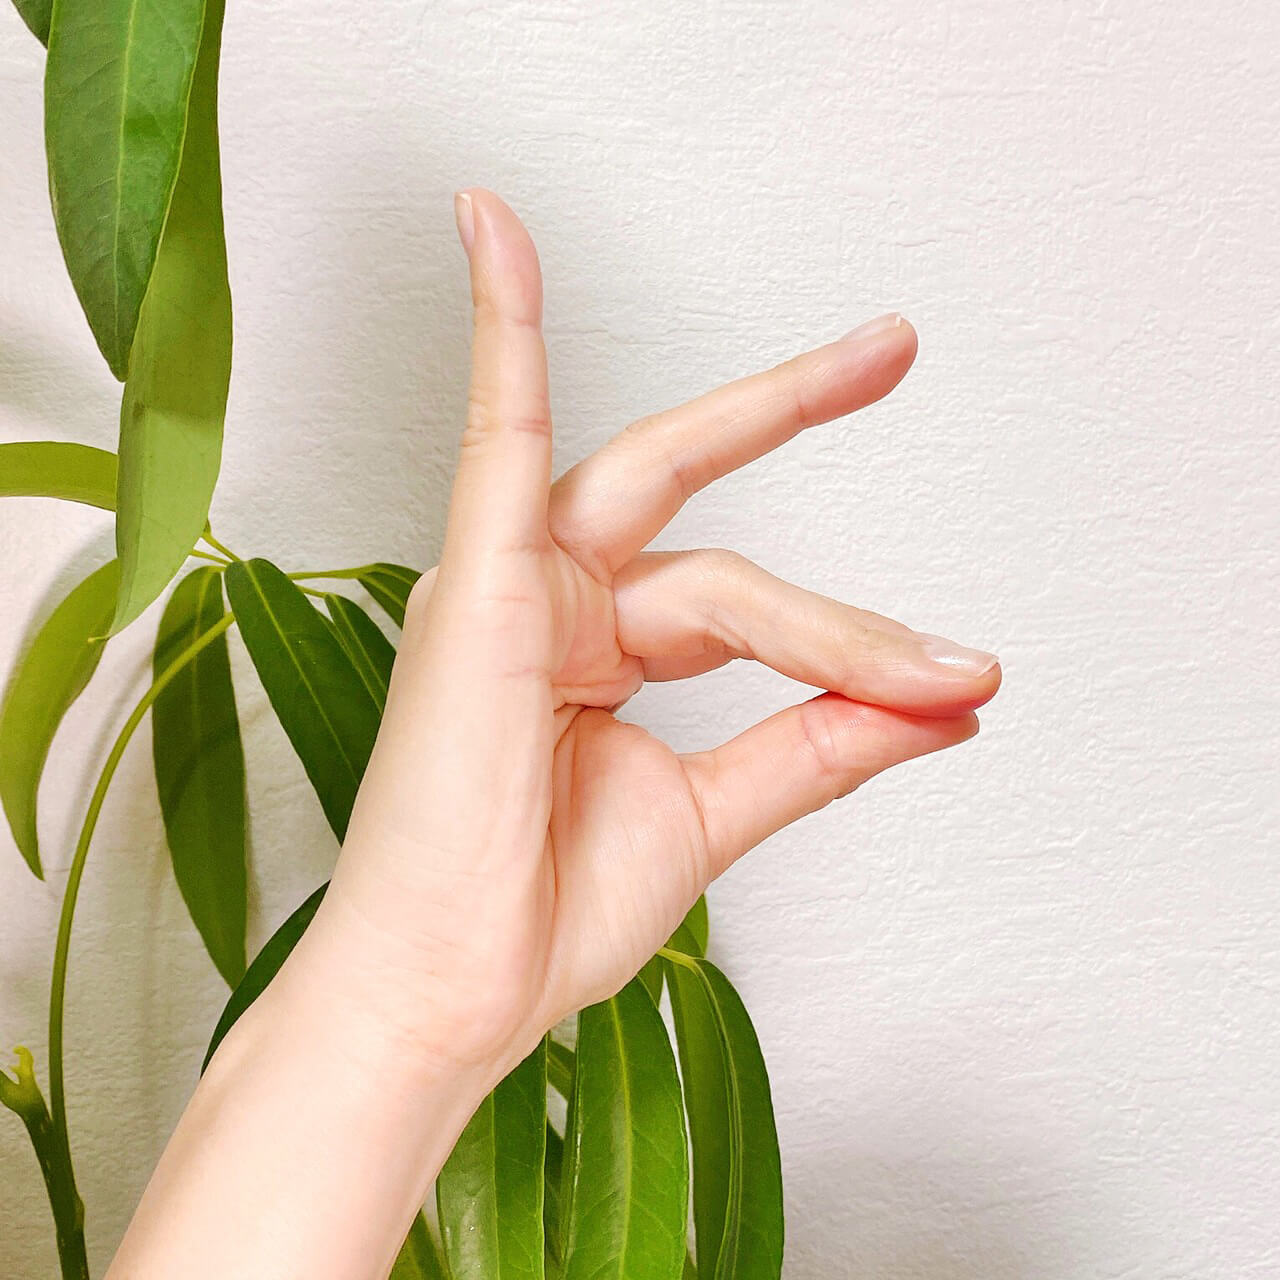 クリームチークを指でつけるなら、指をキツネの形にして親指をスリスリ。チークの色を指の広範囲に広げます。